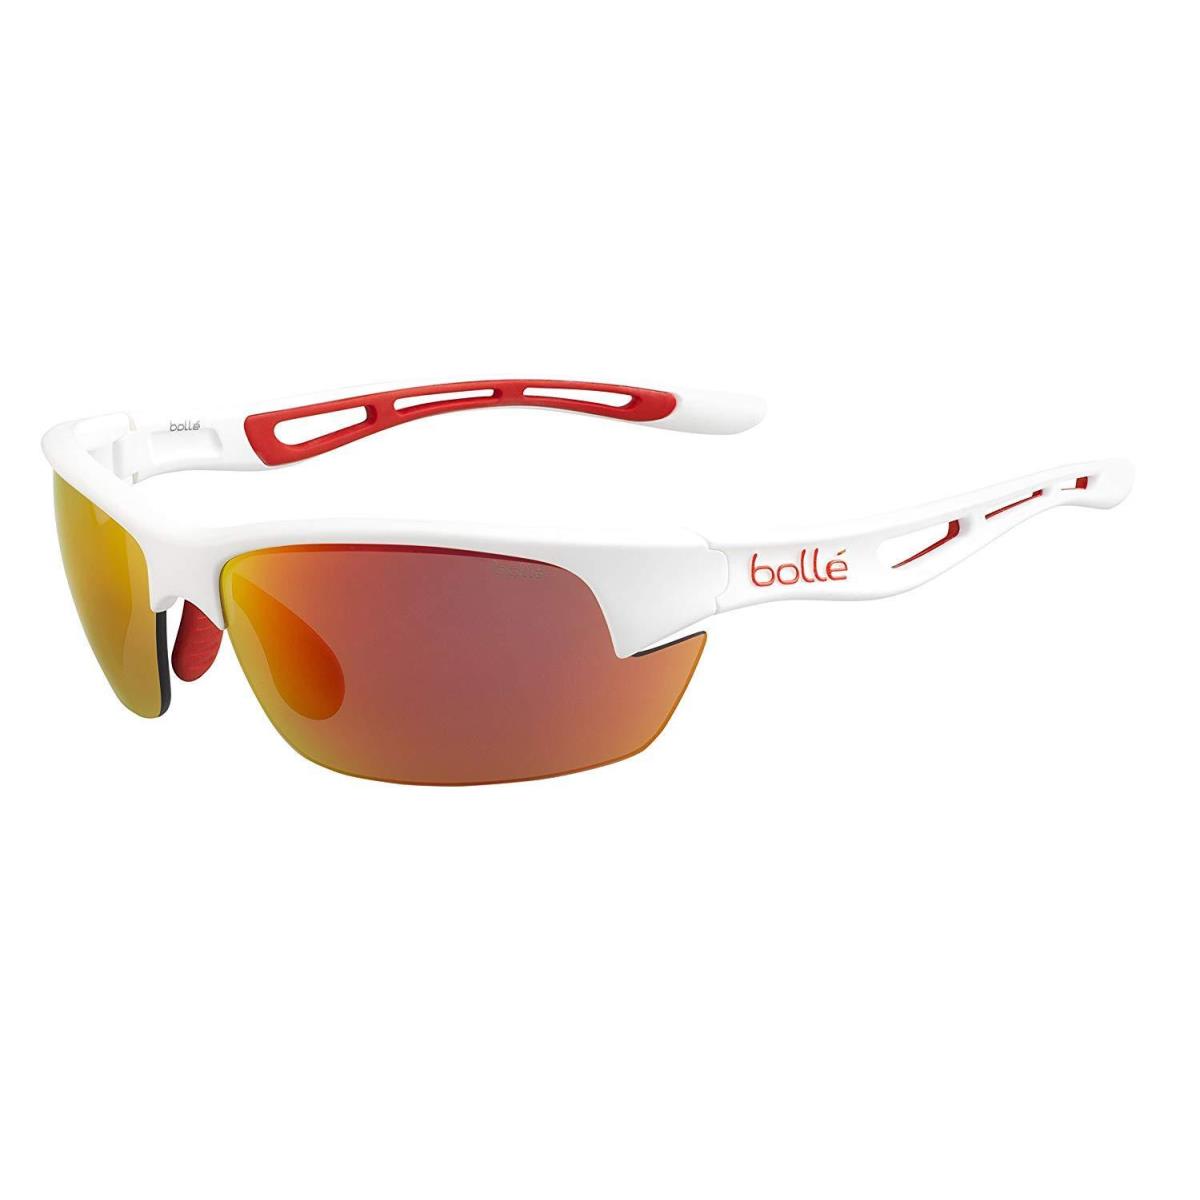 Bolle Bolt S Sunglasses - 12204 - Matte White w/ Fire Oleo/anti-fog Lens